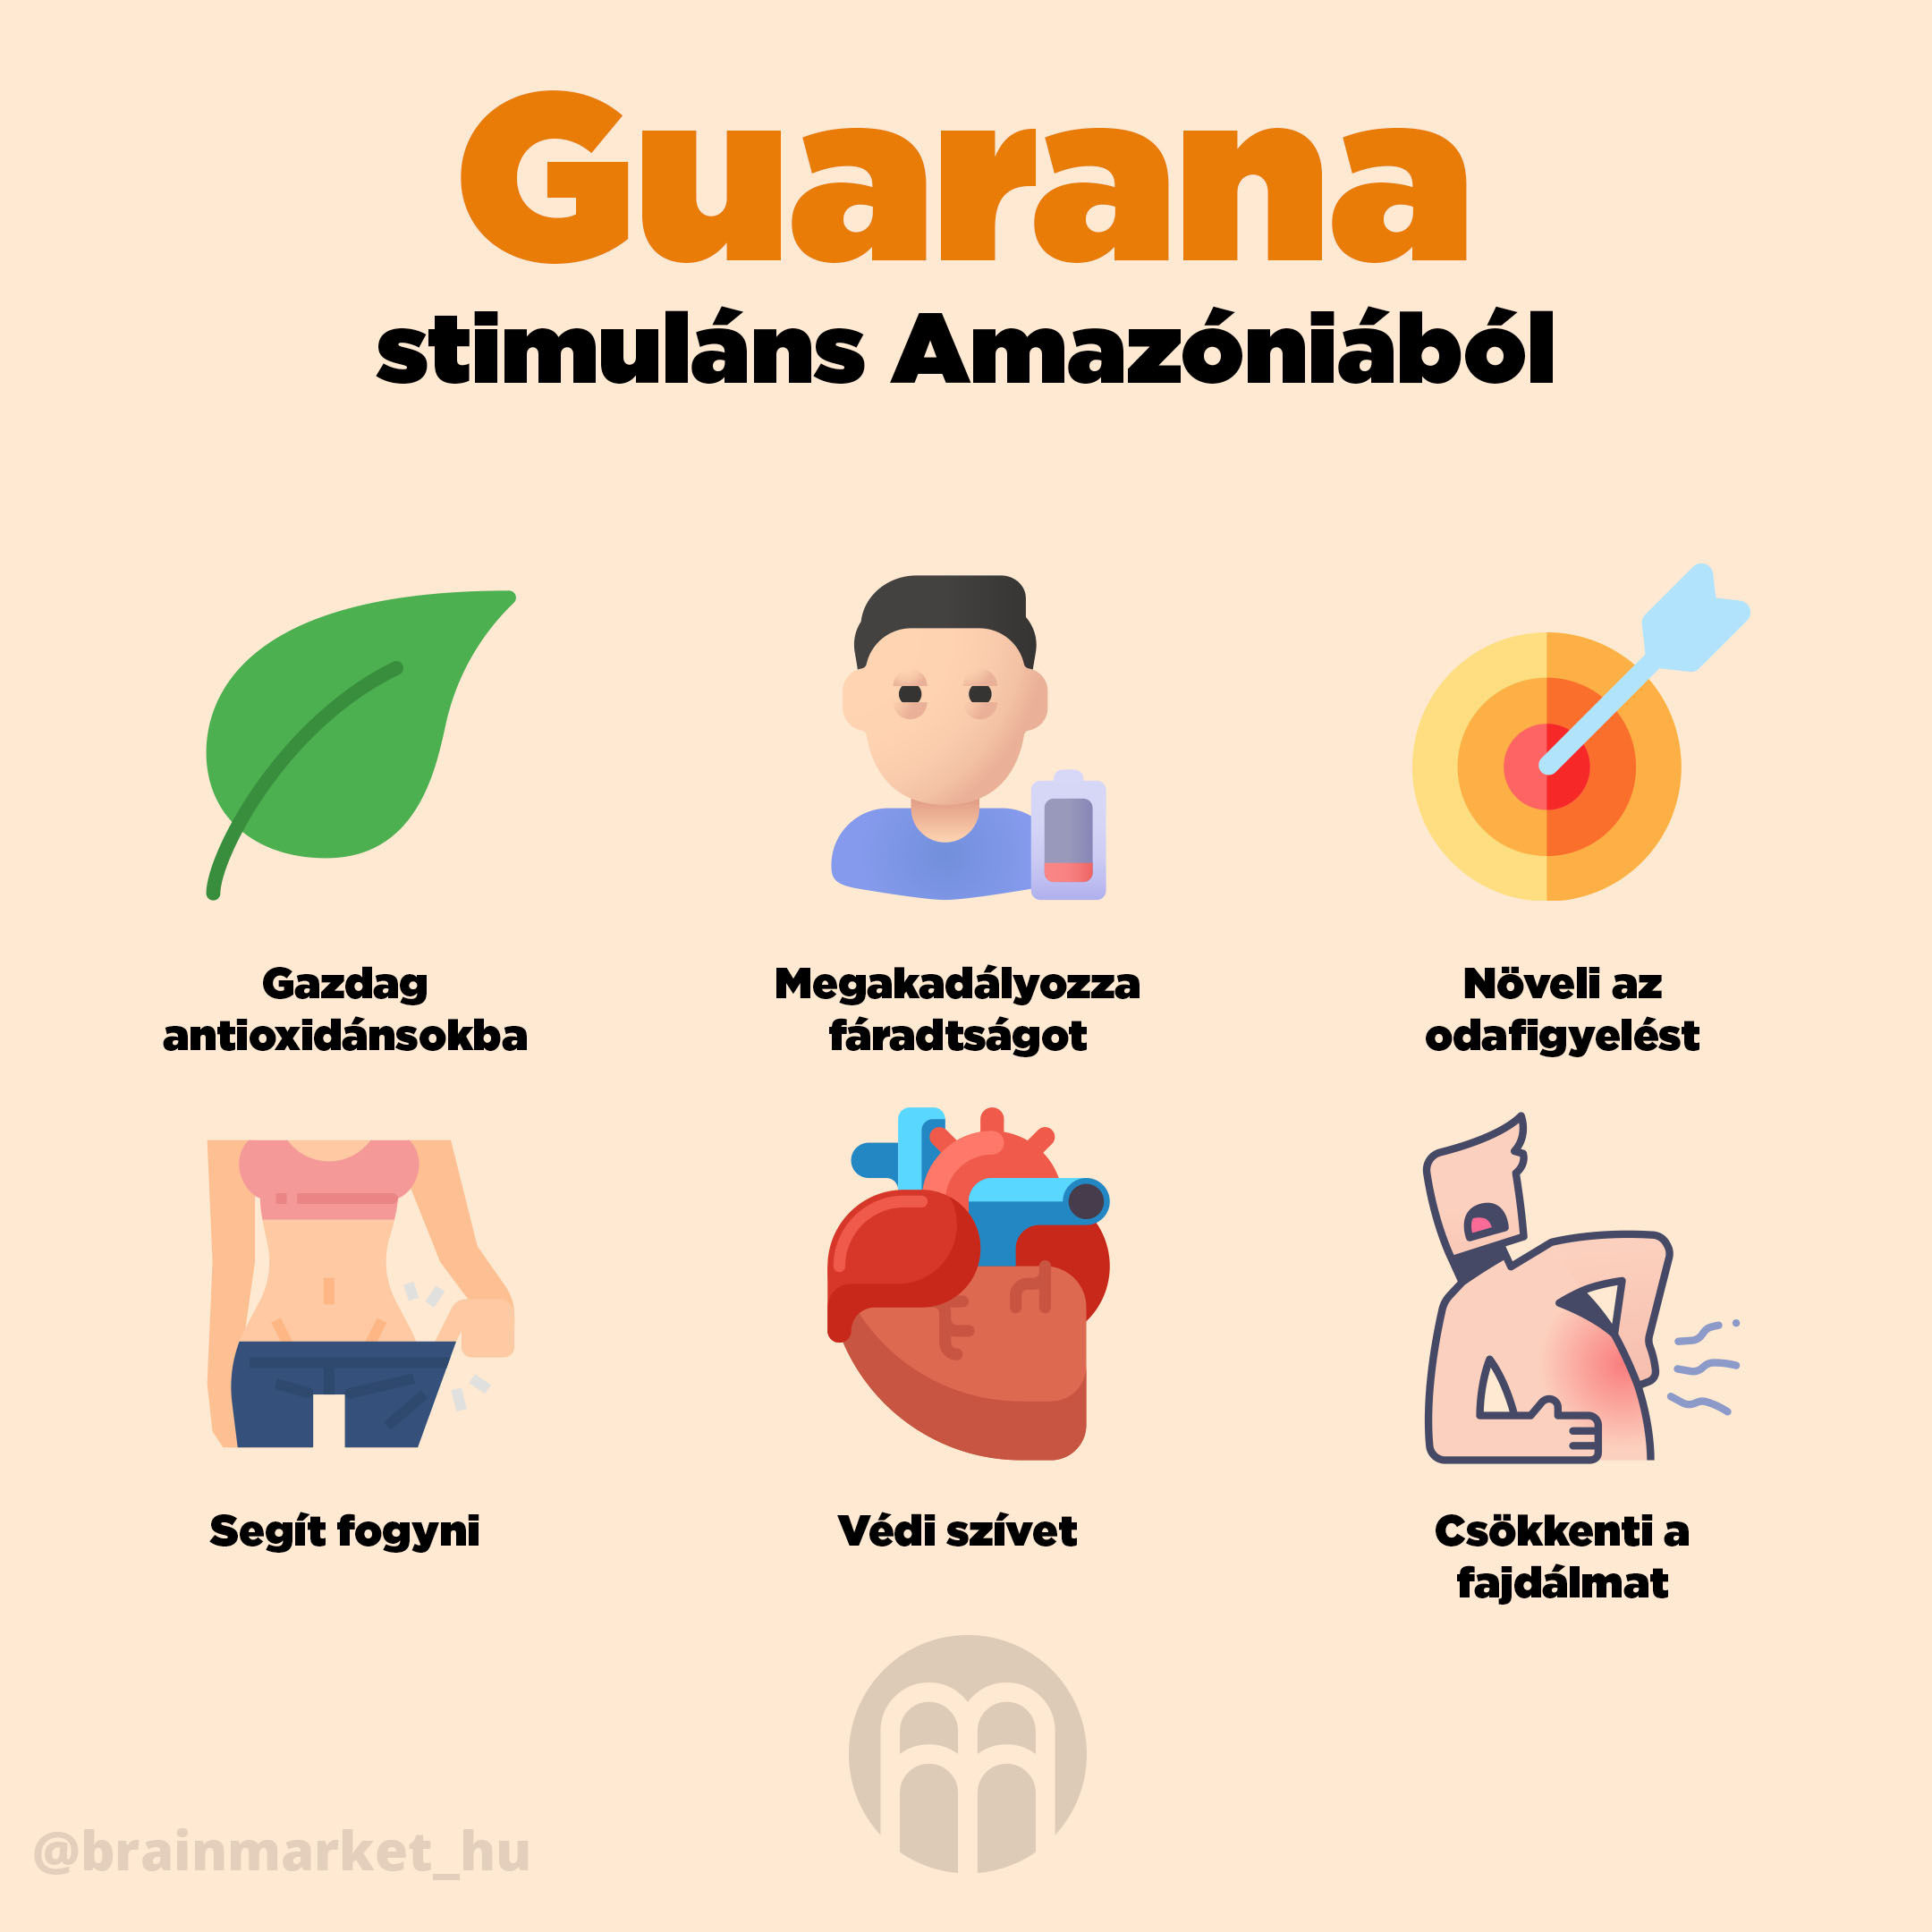 Guarana jóváhagyta az egészségre vonatkozó állításokat